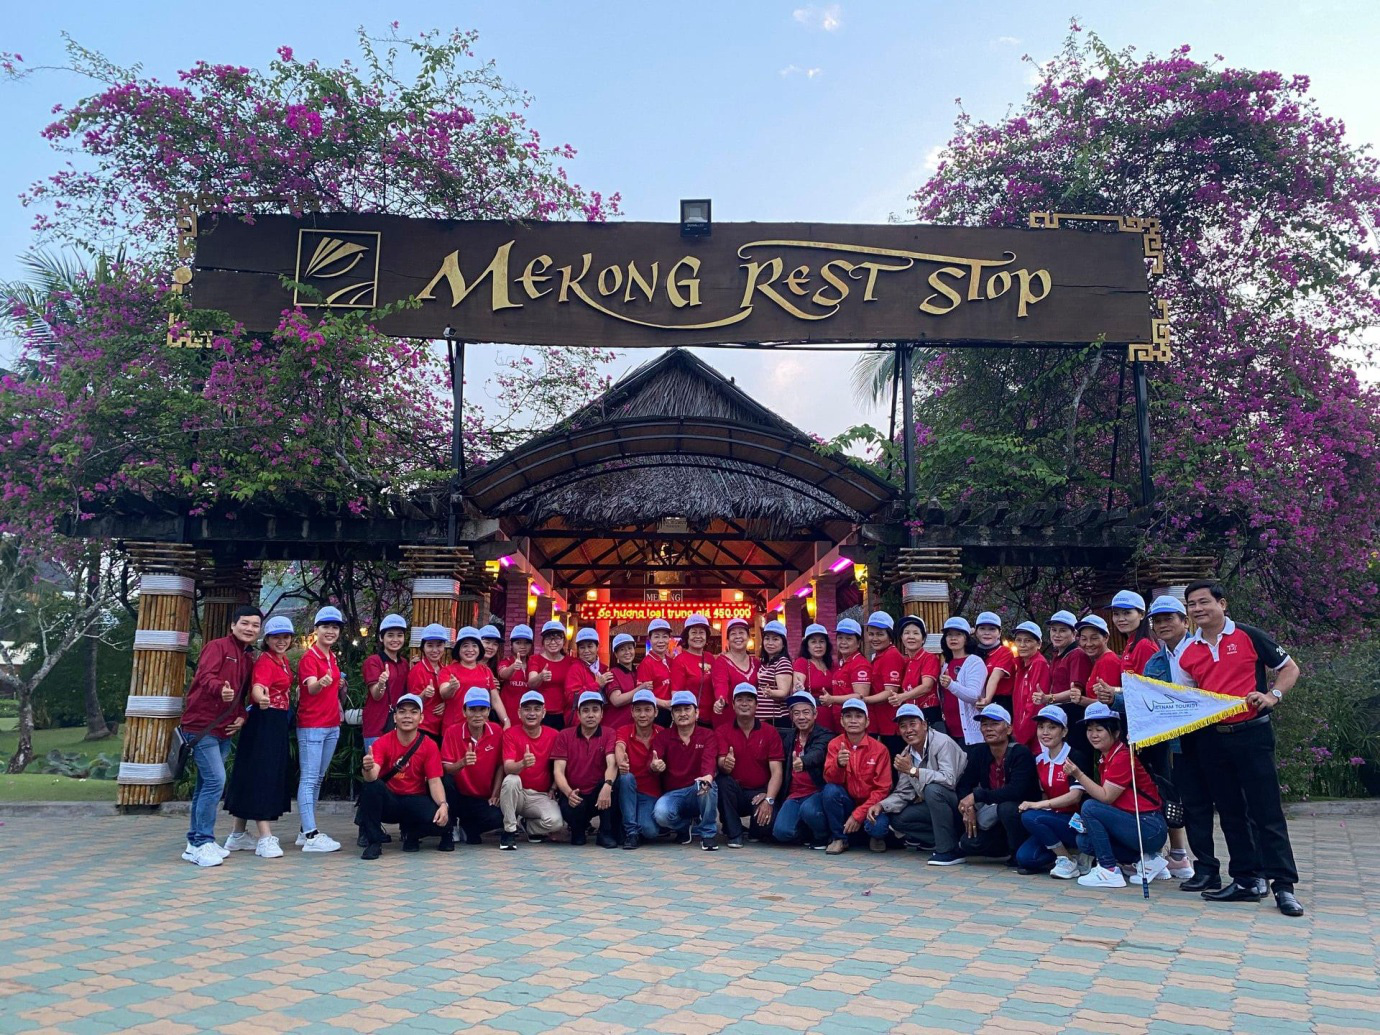 Cùng Vietnam Tourist đón chào Tết Độc lập 30/4 - Tour hè rực nắng 2021 với nhiều khuyến mãi hấp dẫn - Ảnh 2.